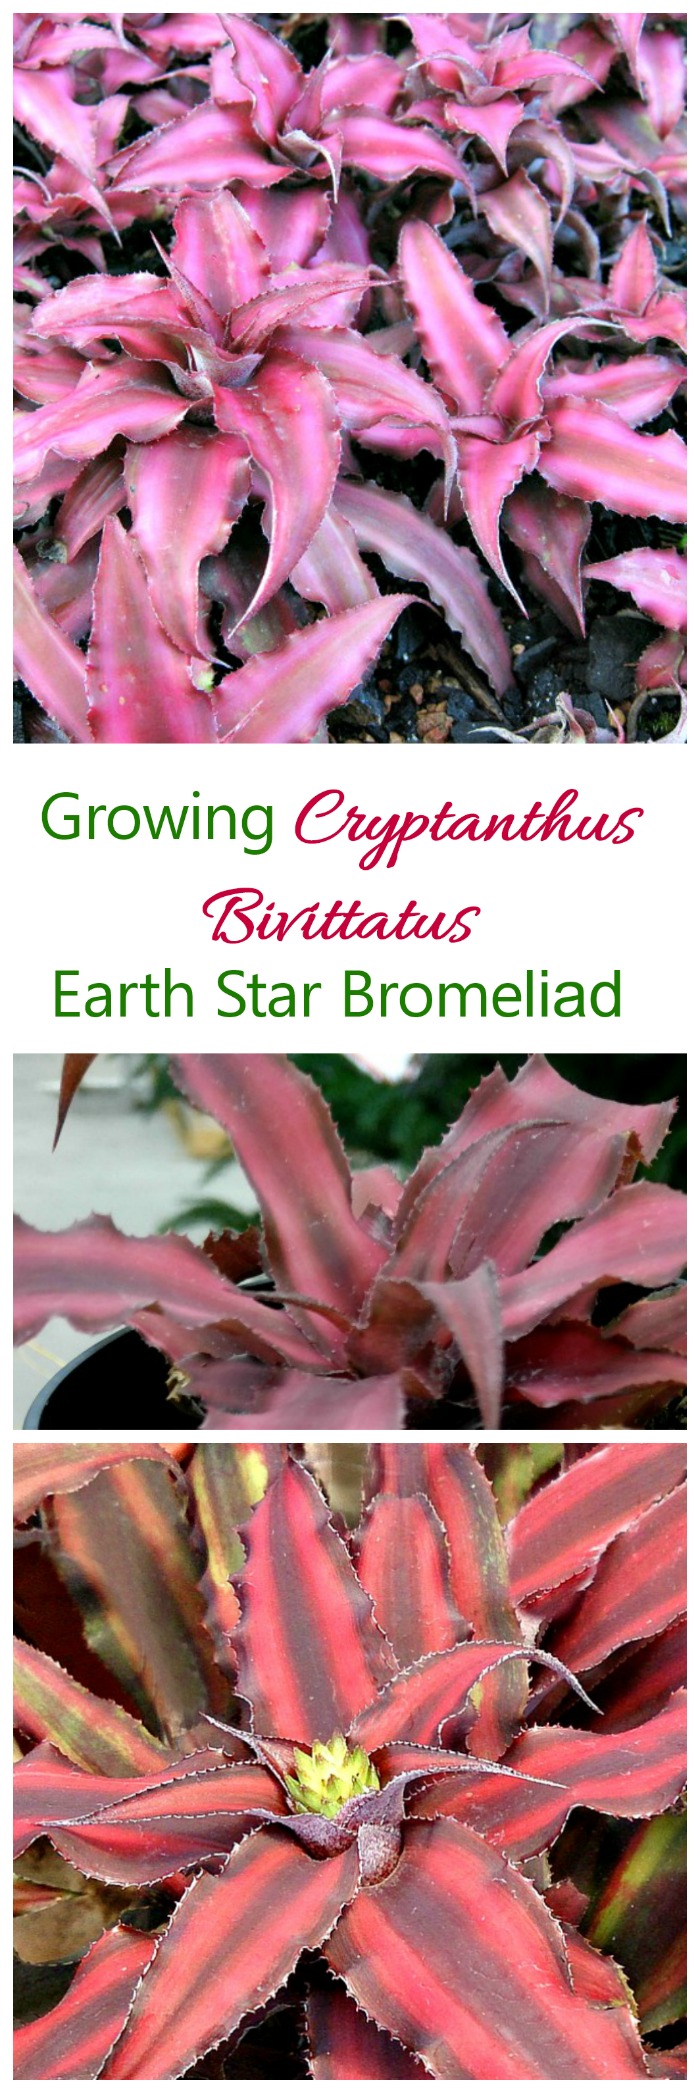 Cryptanthus Bivittatus - Өсөн нэмэгдэж буй дэлхийн од Бромелиад